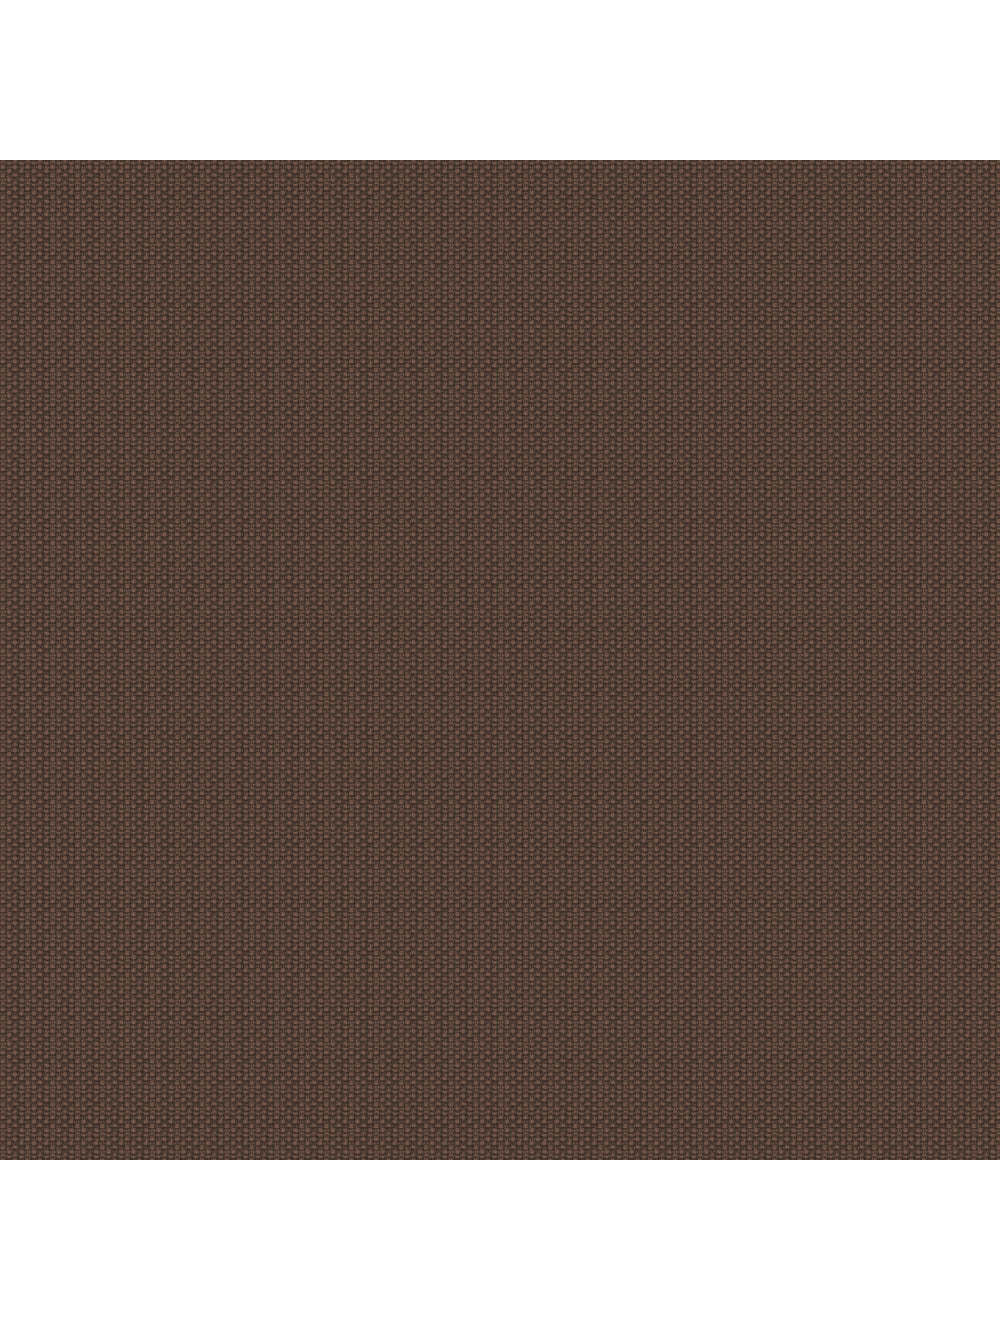 Swatch de material marrón enmarcado americano